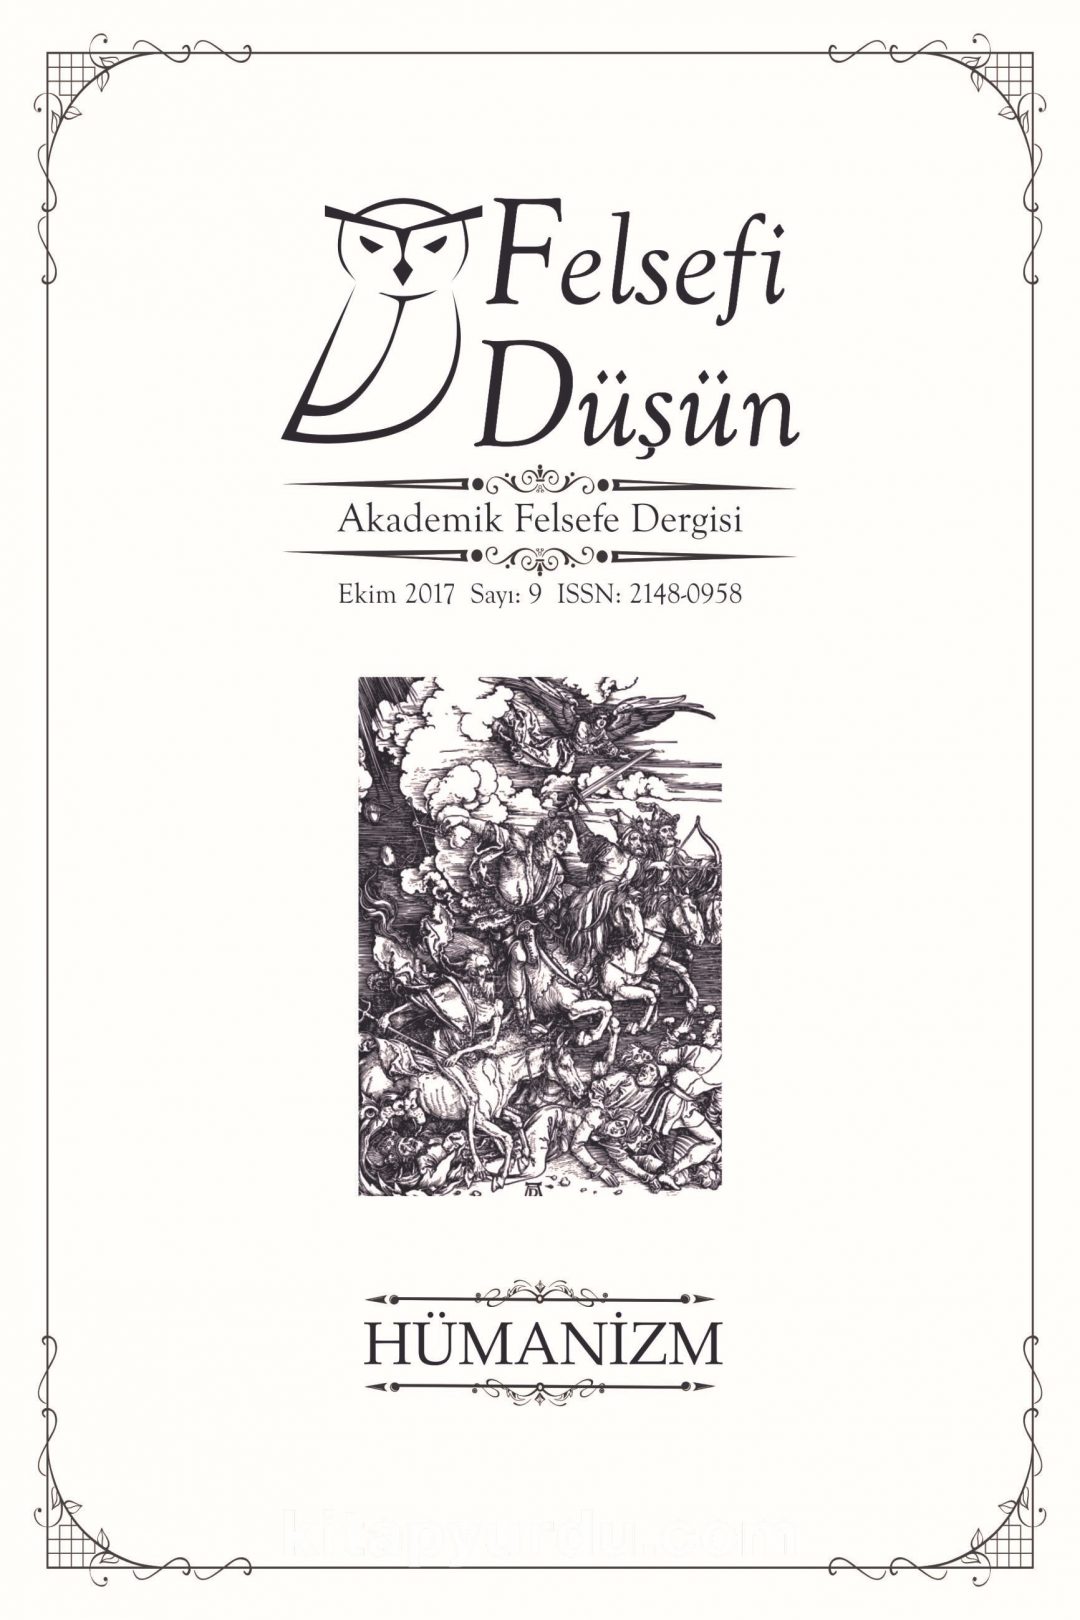 Felsefi Düşün Akademik Felsefe Dergisi Sayı:9 Batı’da ve Türkiye’de Hümanizm: Dün-Bugün